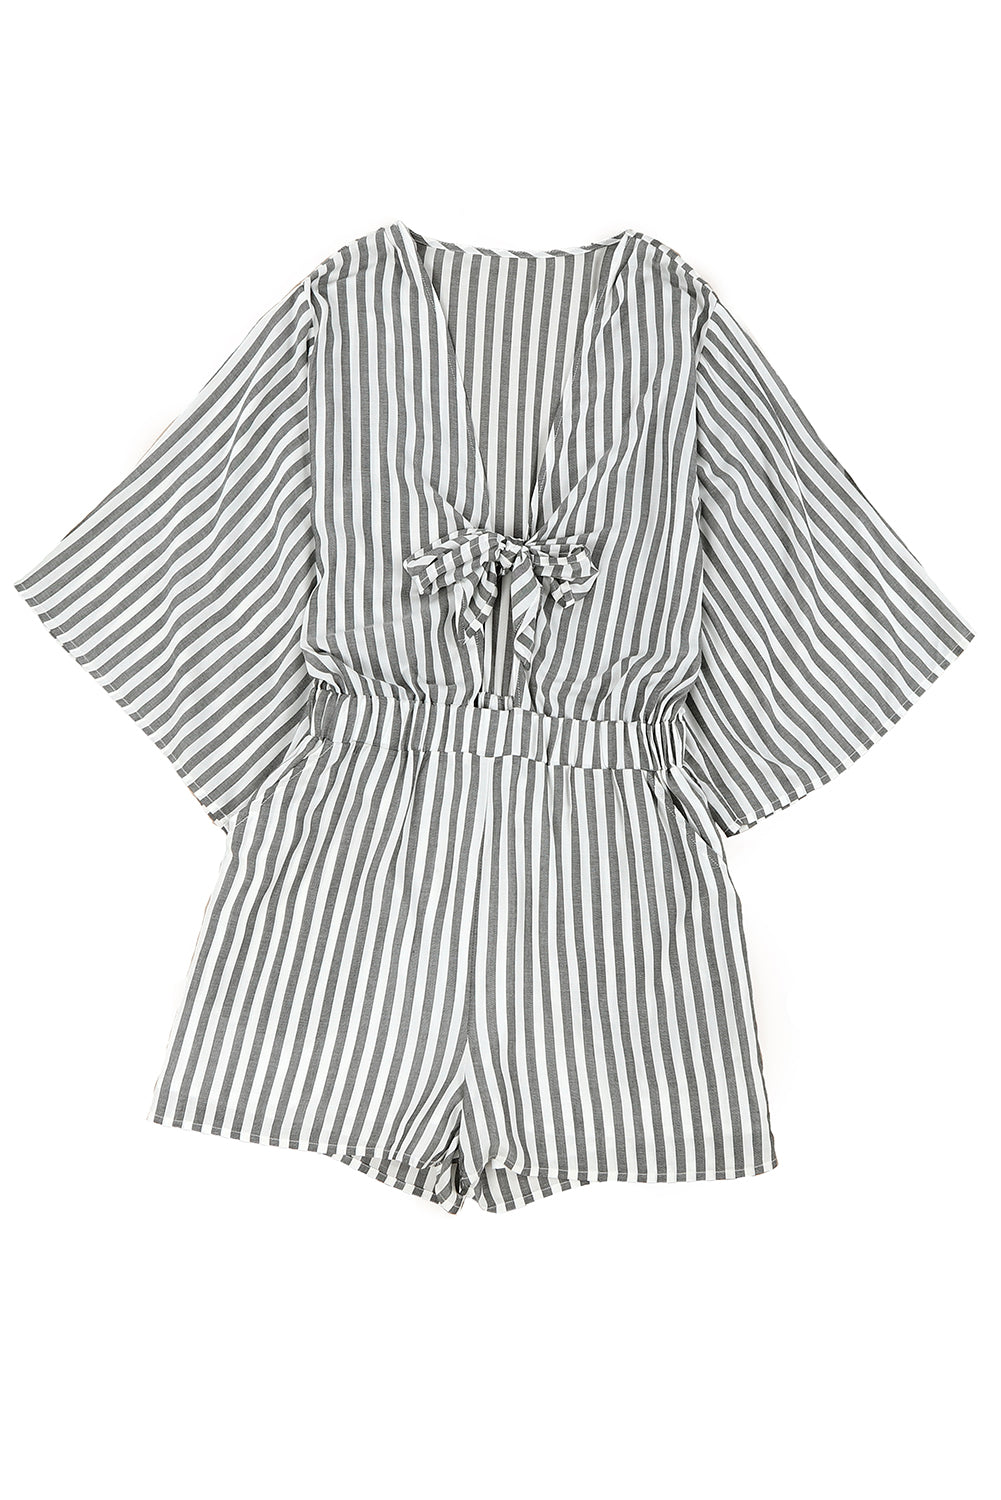 Grauer gestreifter Strampler mit 3/4 breiten Kimono-Ärmeln, vorne zum Binden und Taschen